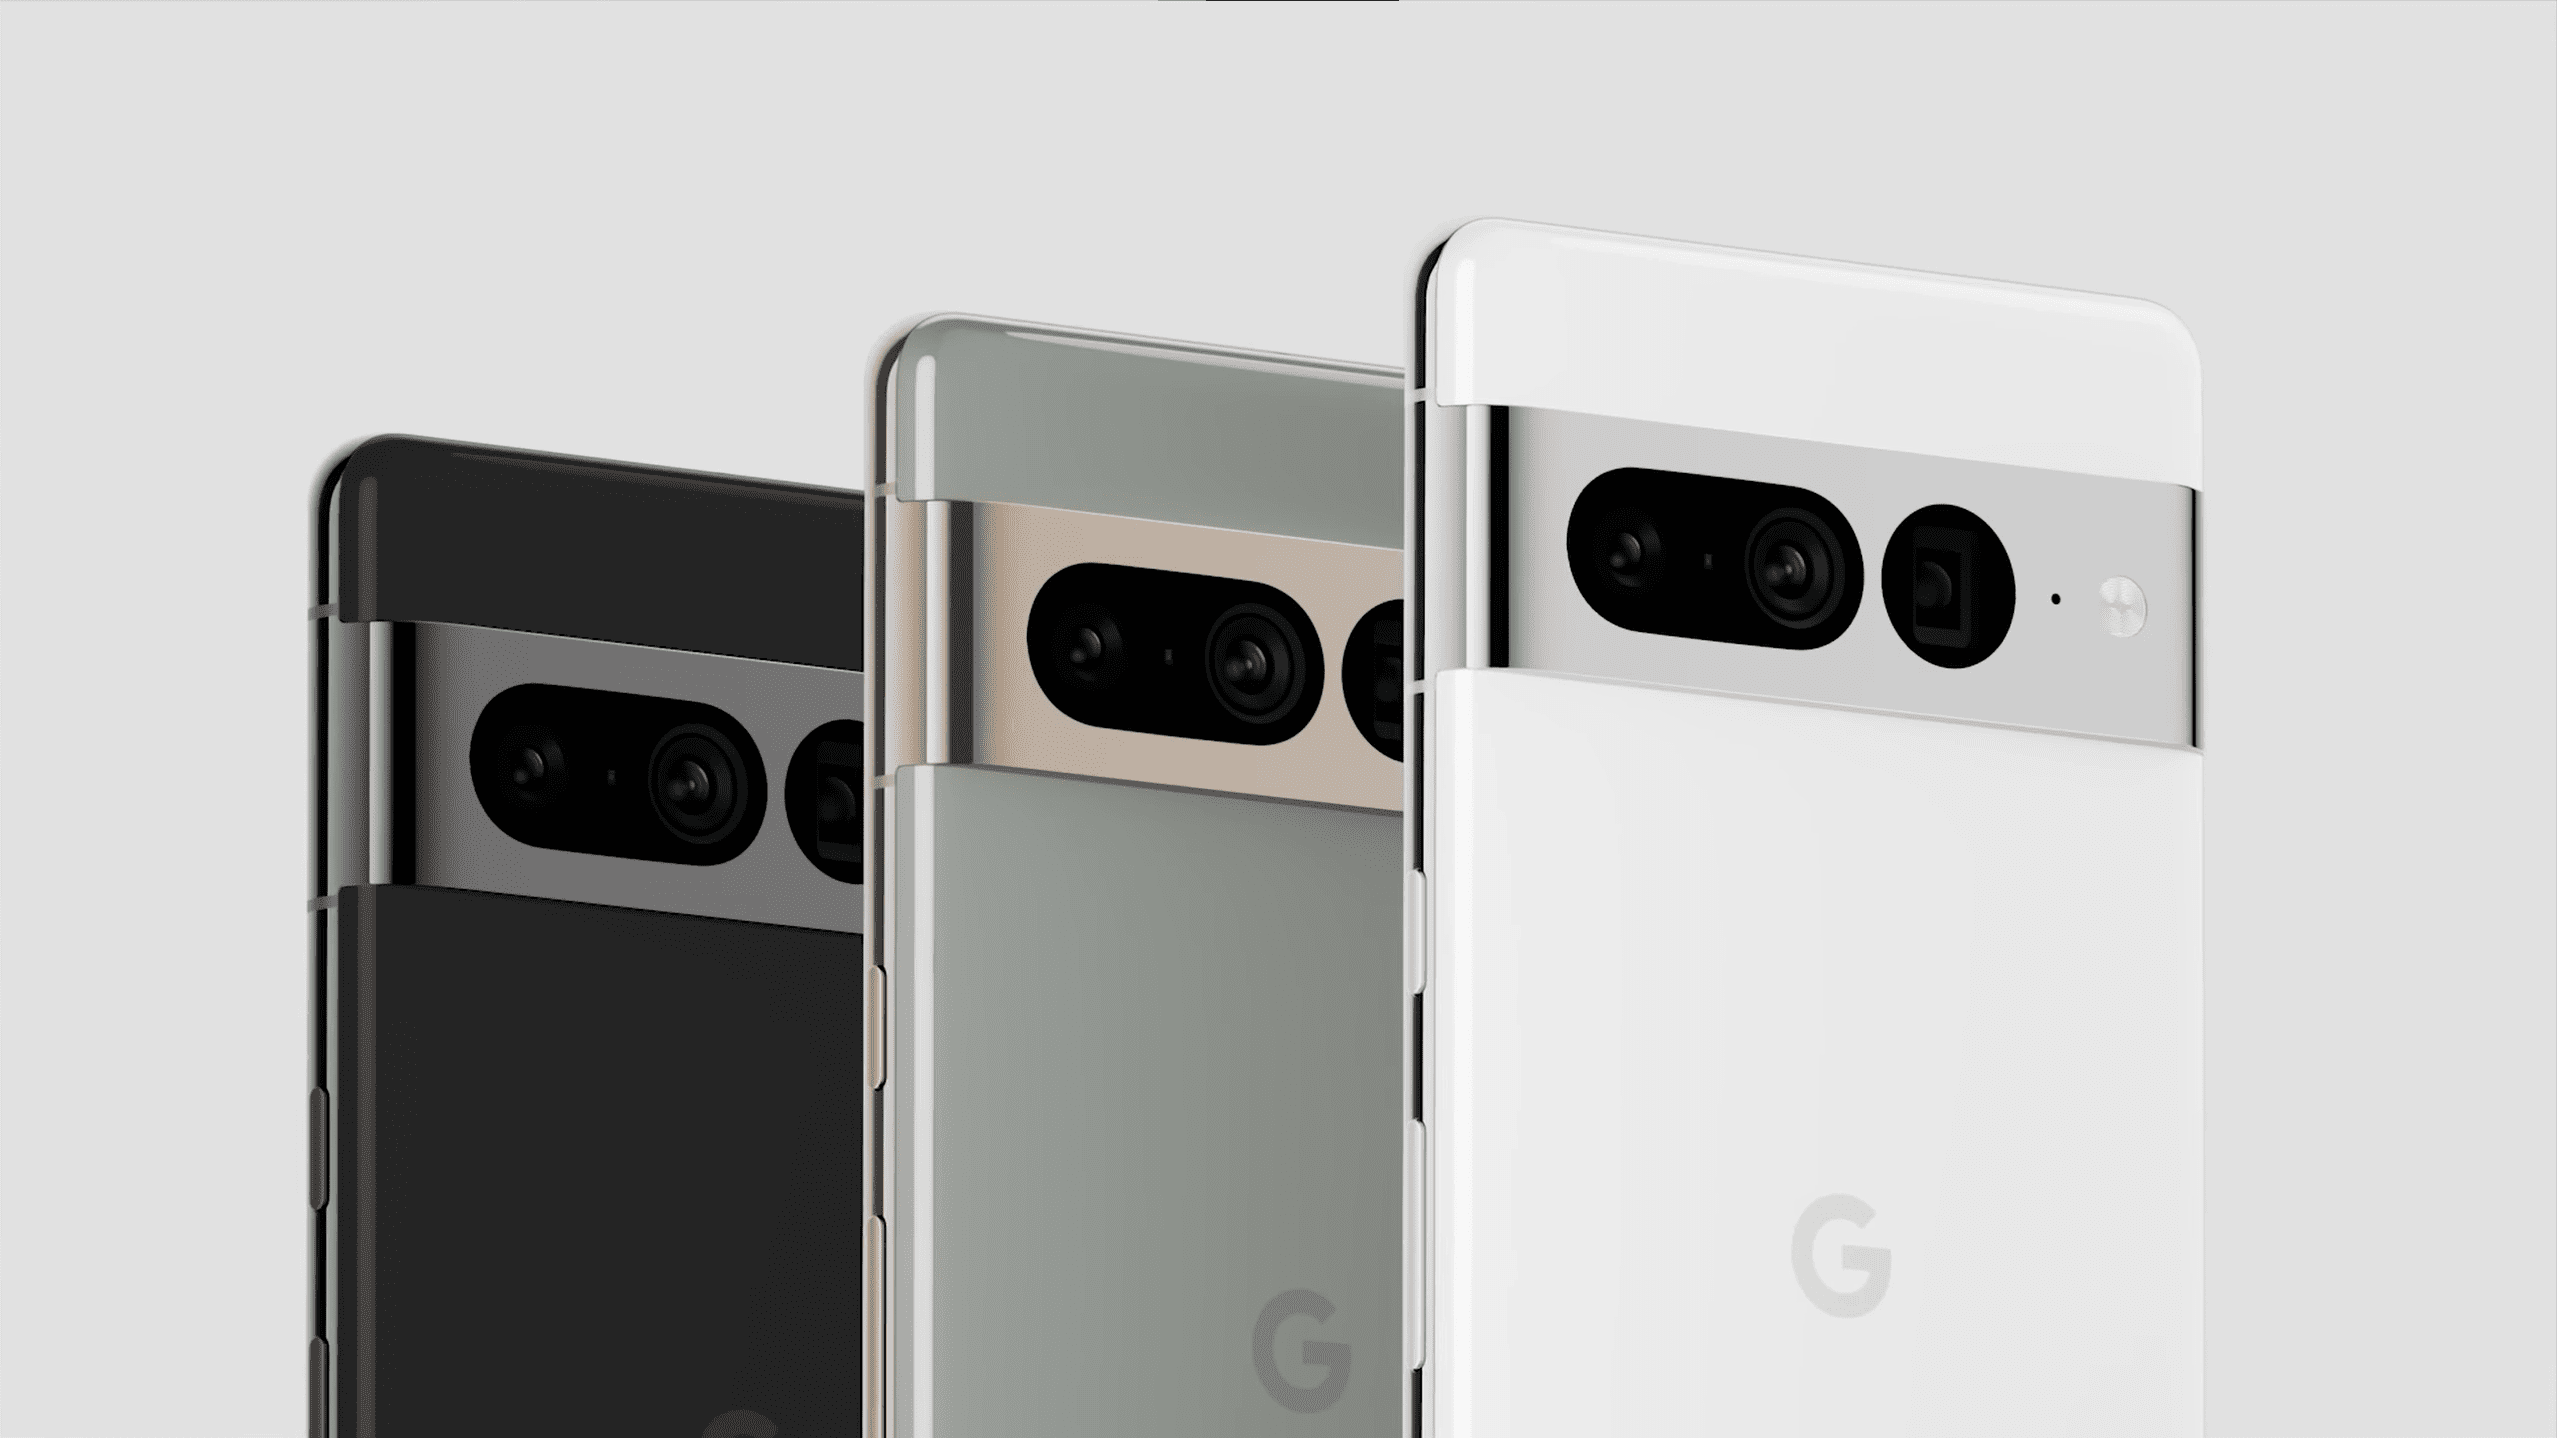 Offizielles Rendering von Google Pixel 7 Pro, dreimal in Schwarz, Weiß und Grün dargestellt